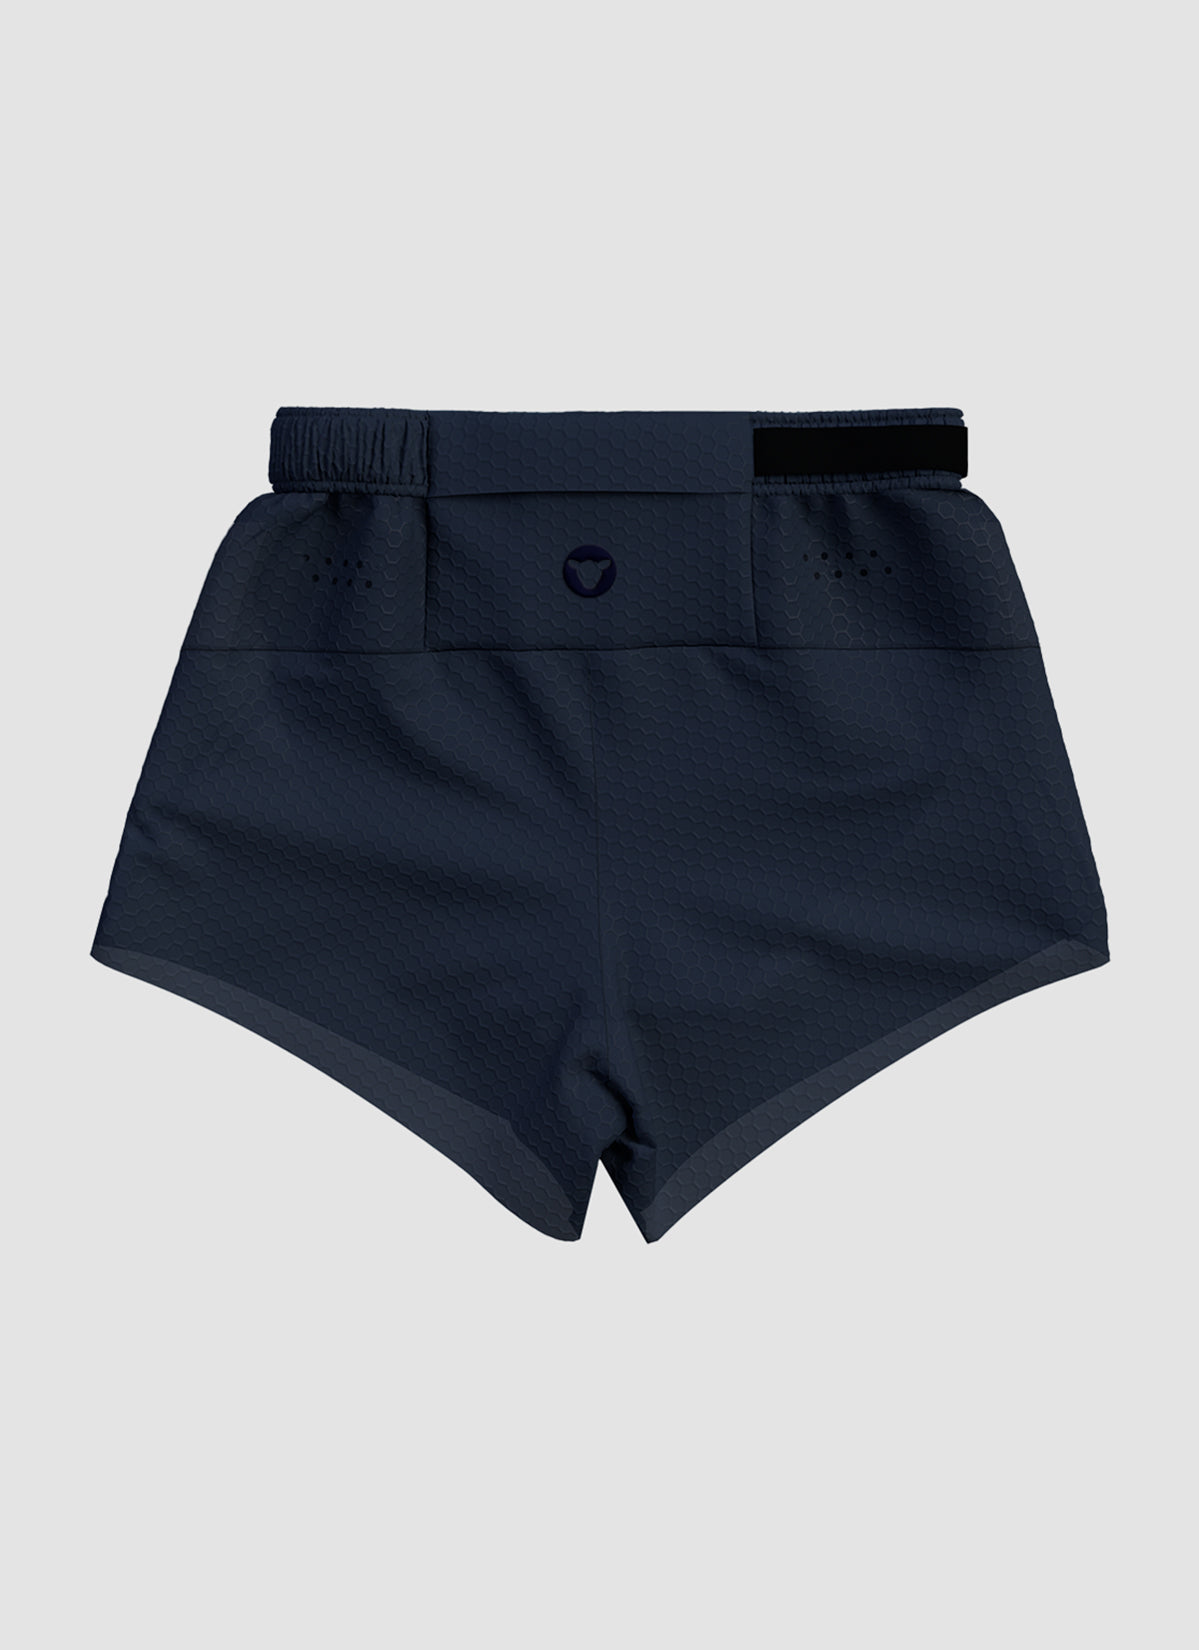 Men's Fly 3" Shorts - Midnight Navy